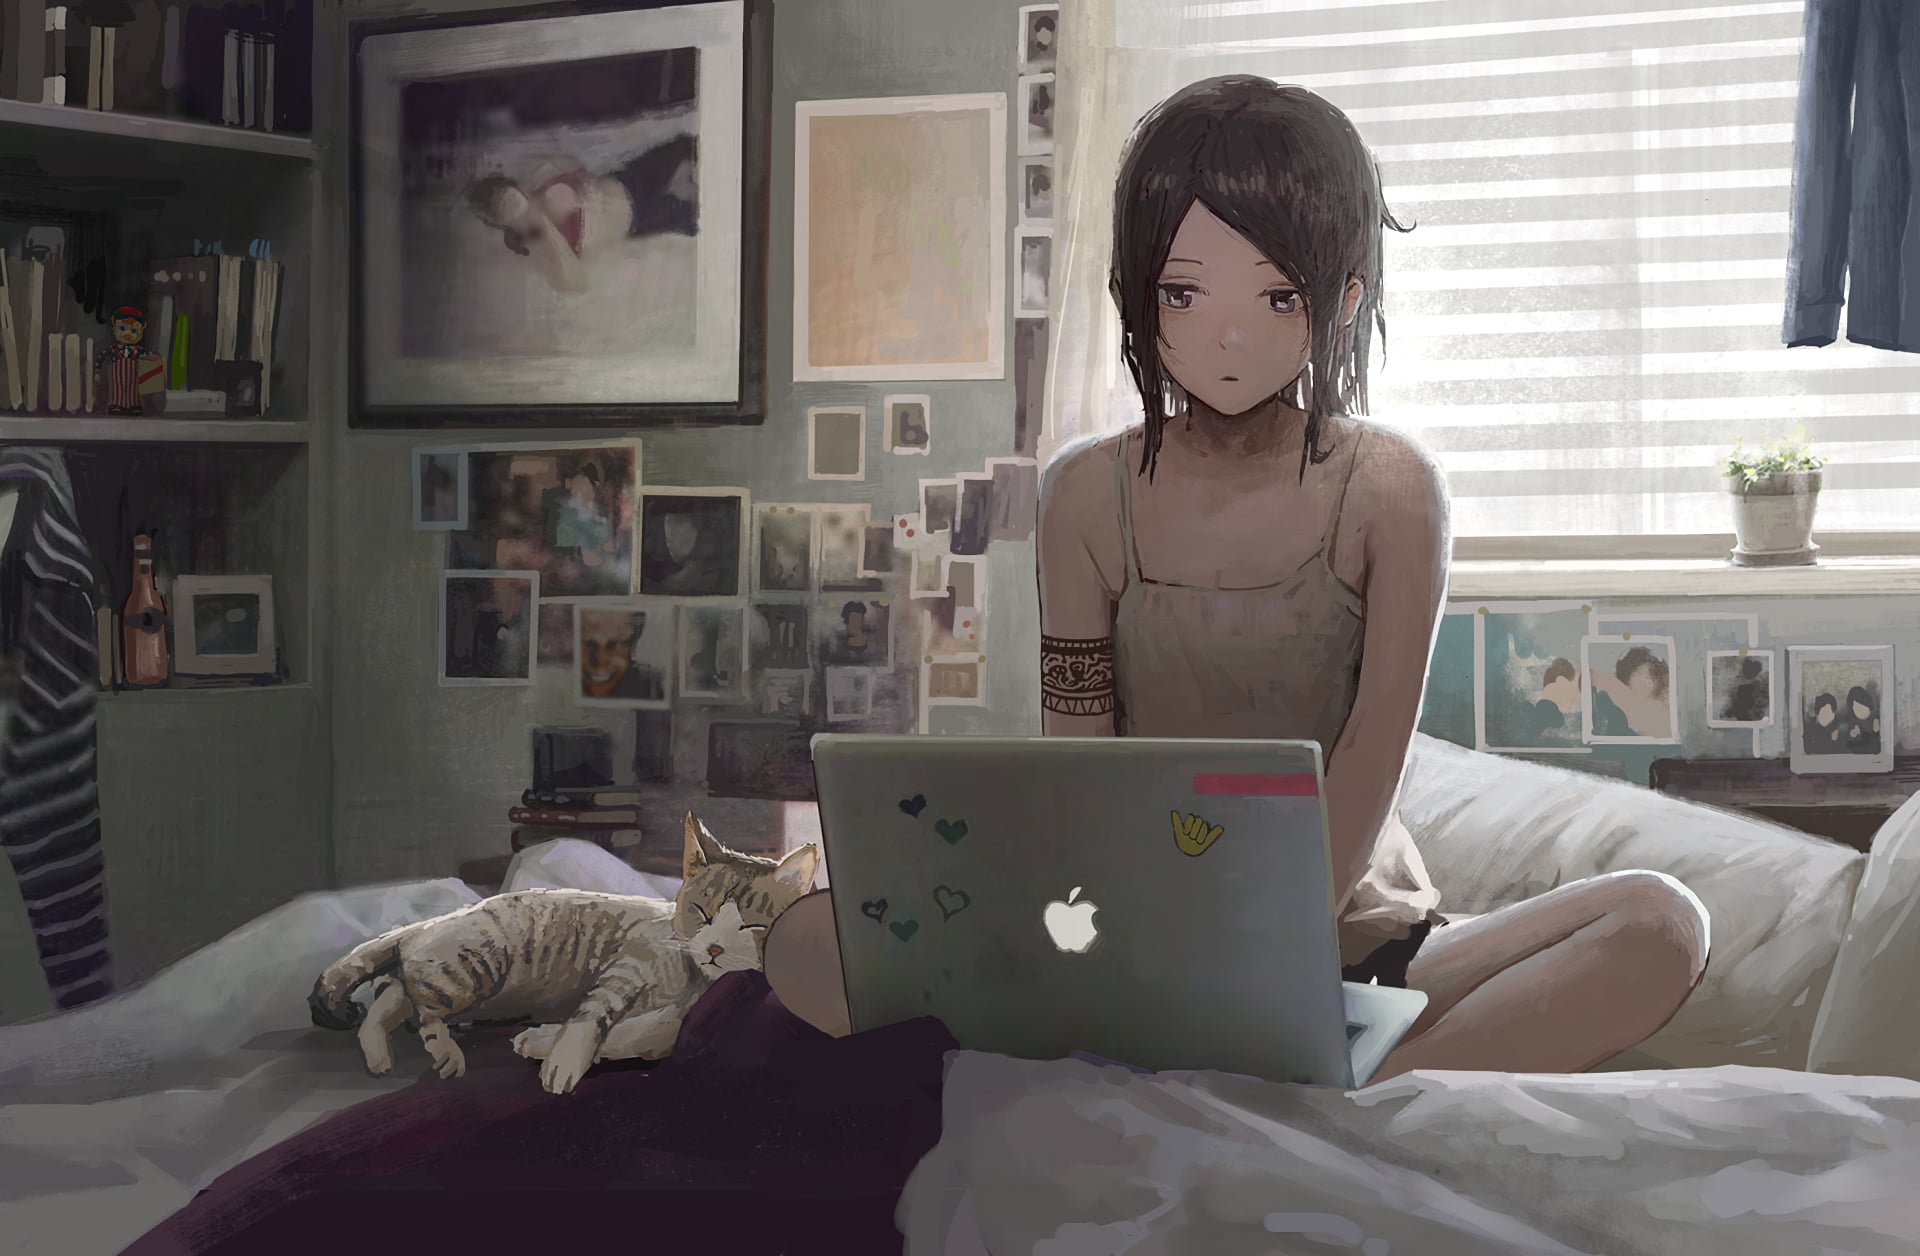 black haired girl anime character illustration, brown haired femal anime character facing on gray